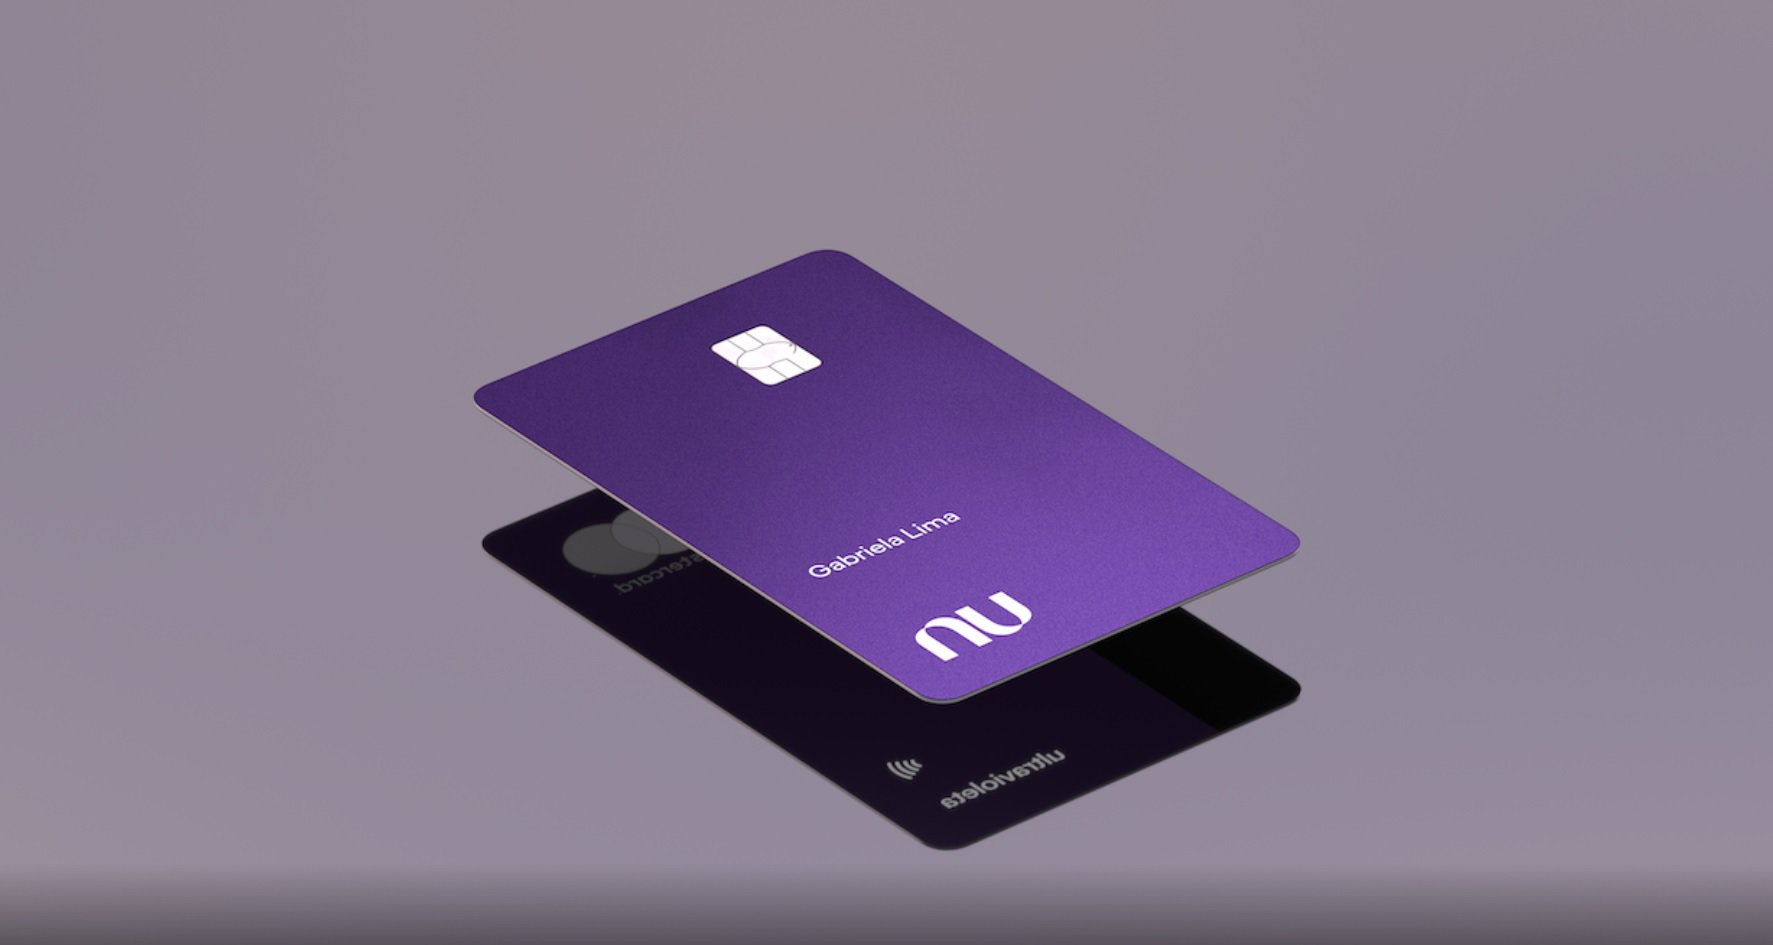 Cartão De Crédito Nubank Ultravioleta Tudo O Que Você Precisa Saber De8 6650